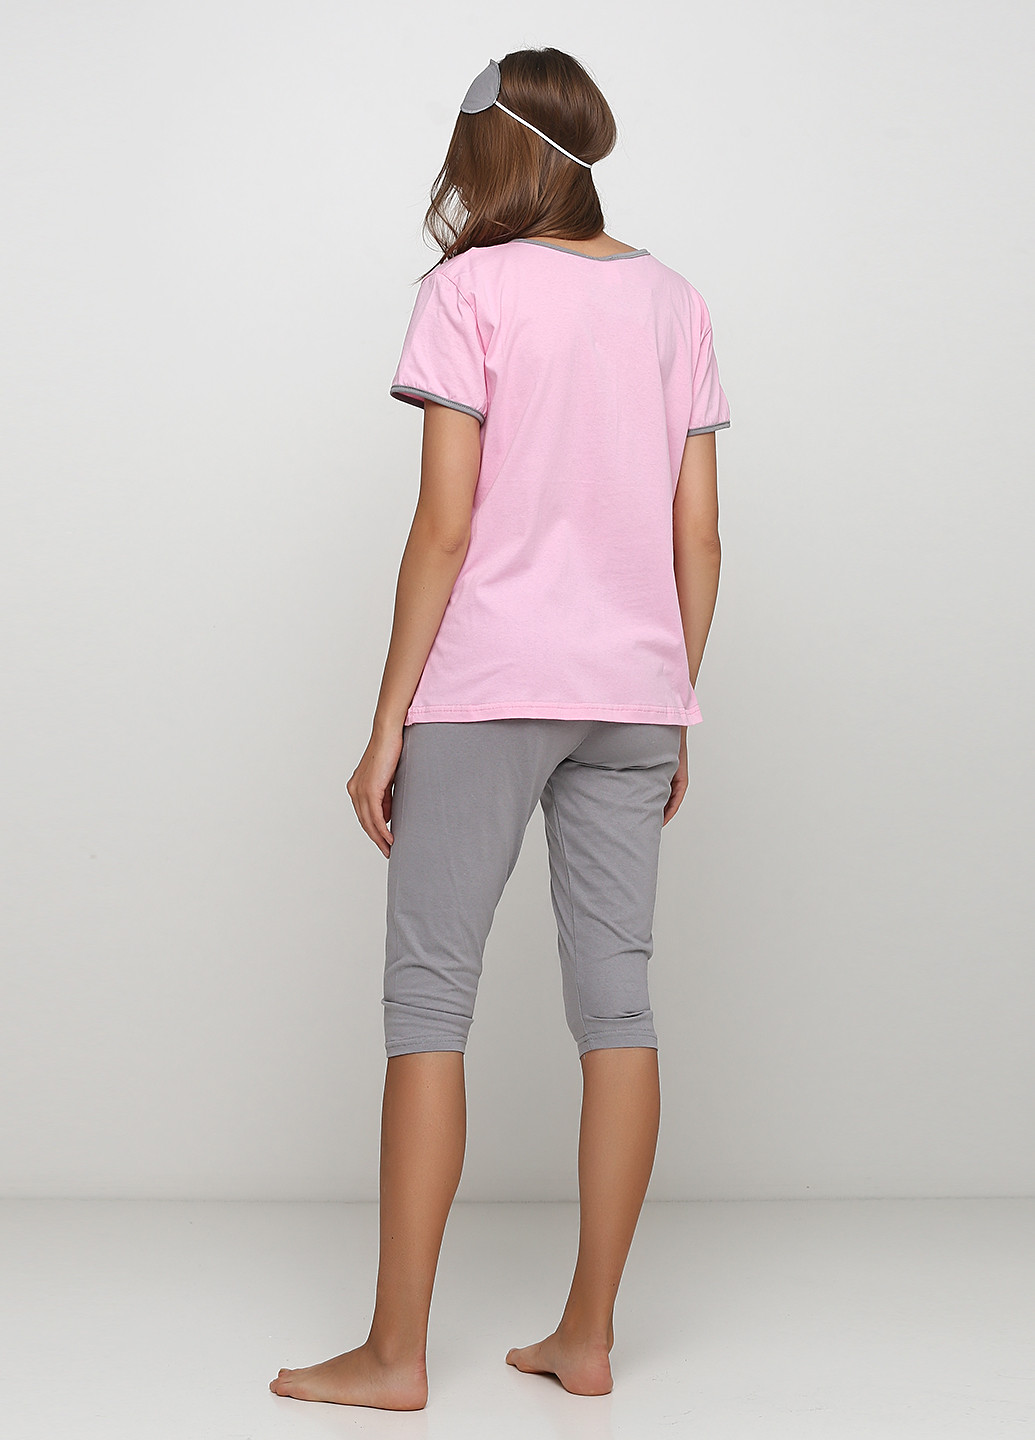 Рожевий демісезонний комплект (футболка, бриджі, маска для сну) Трикомир